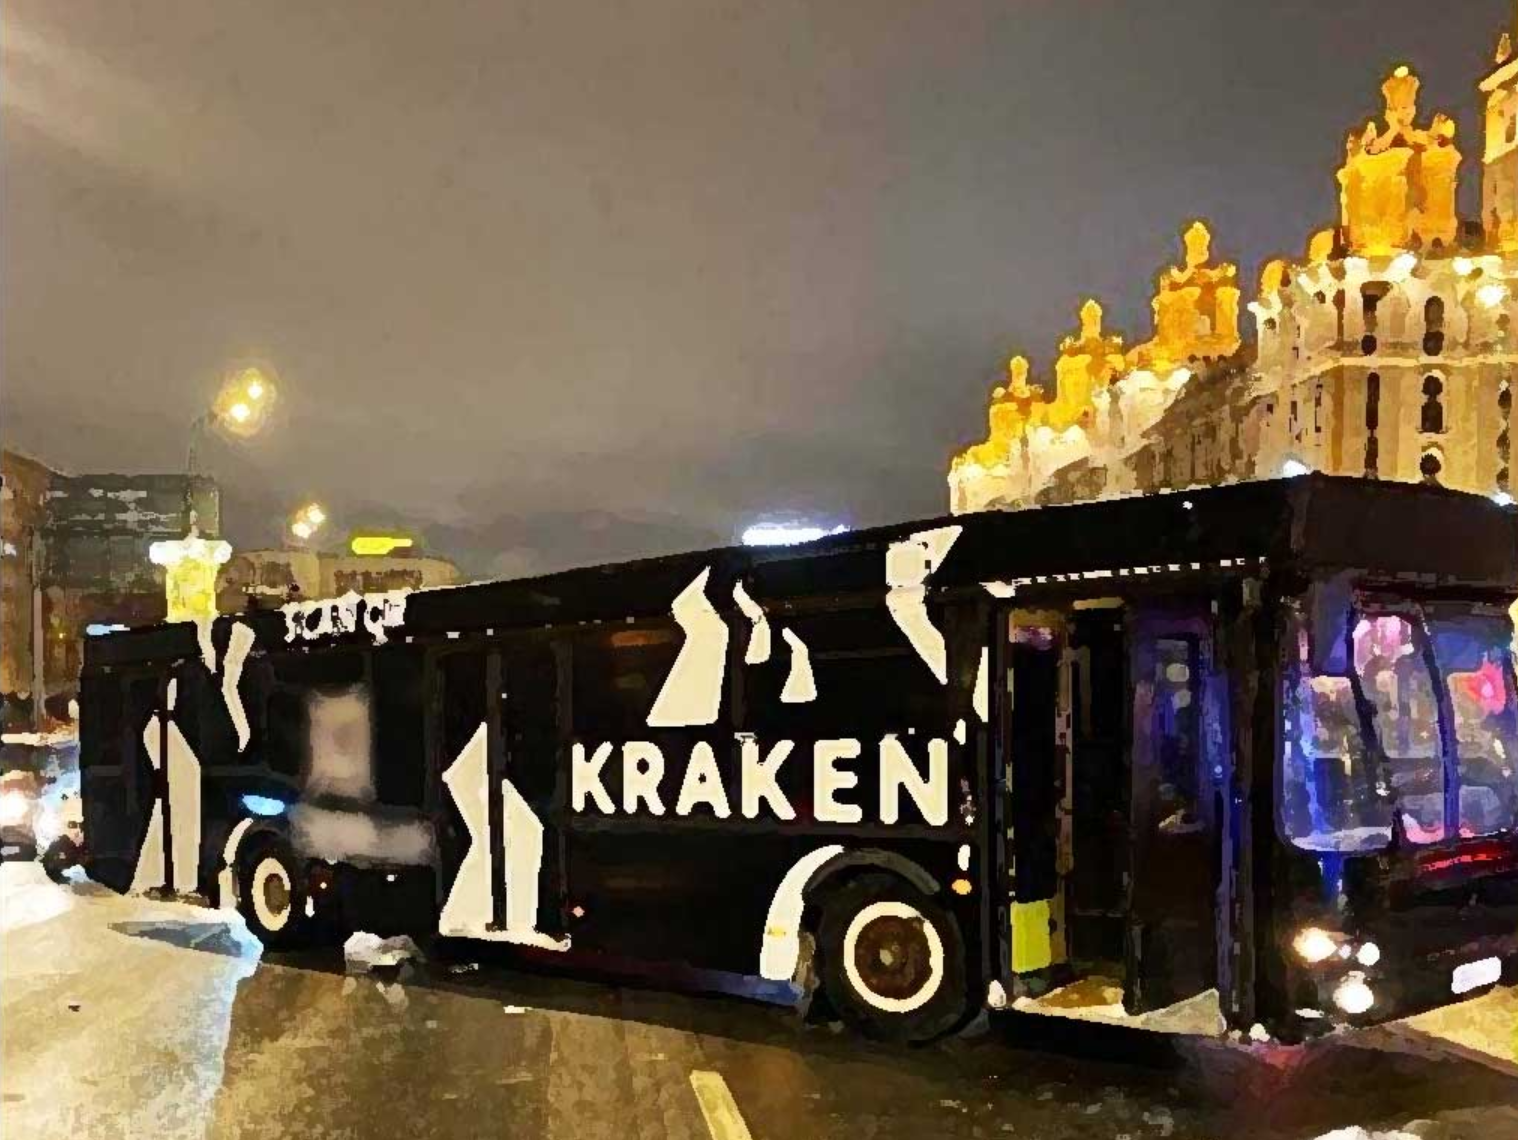 Что было в фургоне кракен на арбате. Автобус Кракен на Арбате. Kraken автобус Москва. Автобус Кракен в Москве. Современные автобусы.